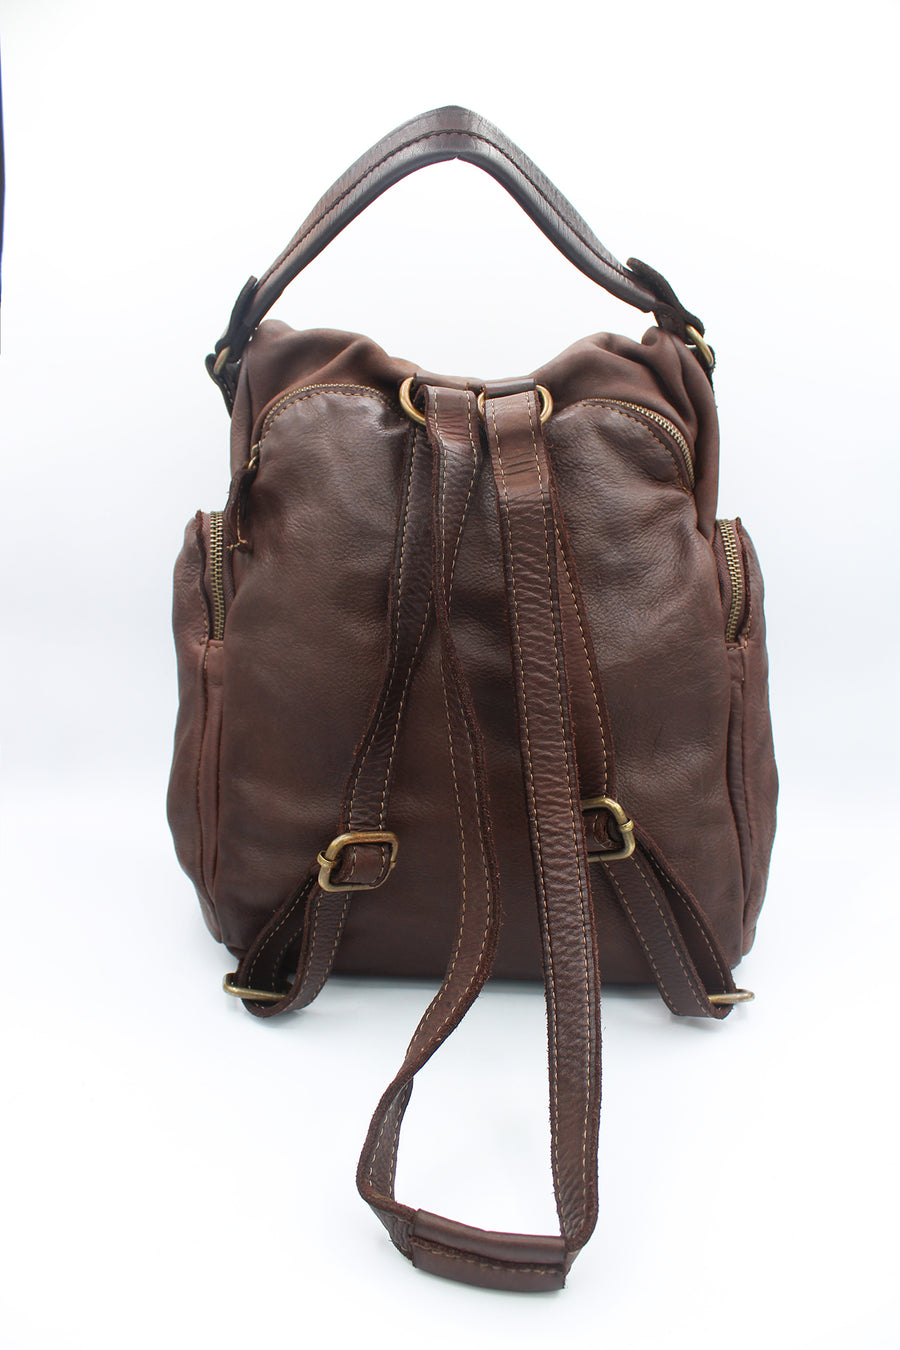 Simba bag/backpack